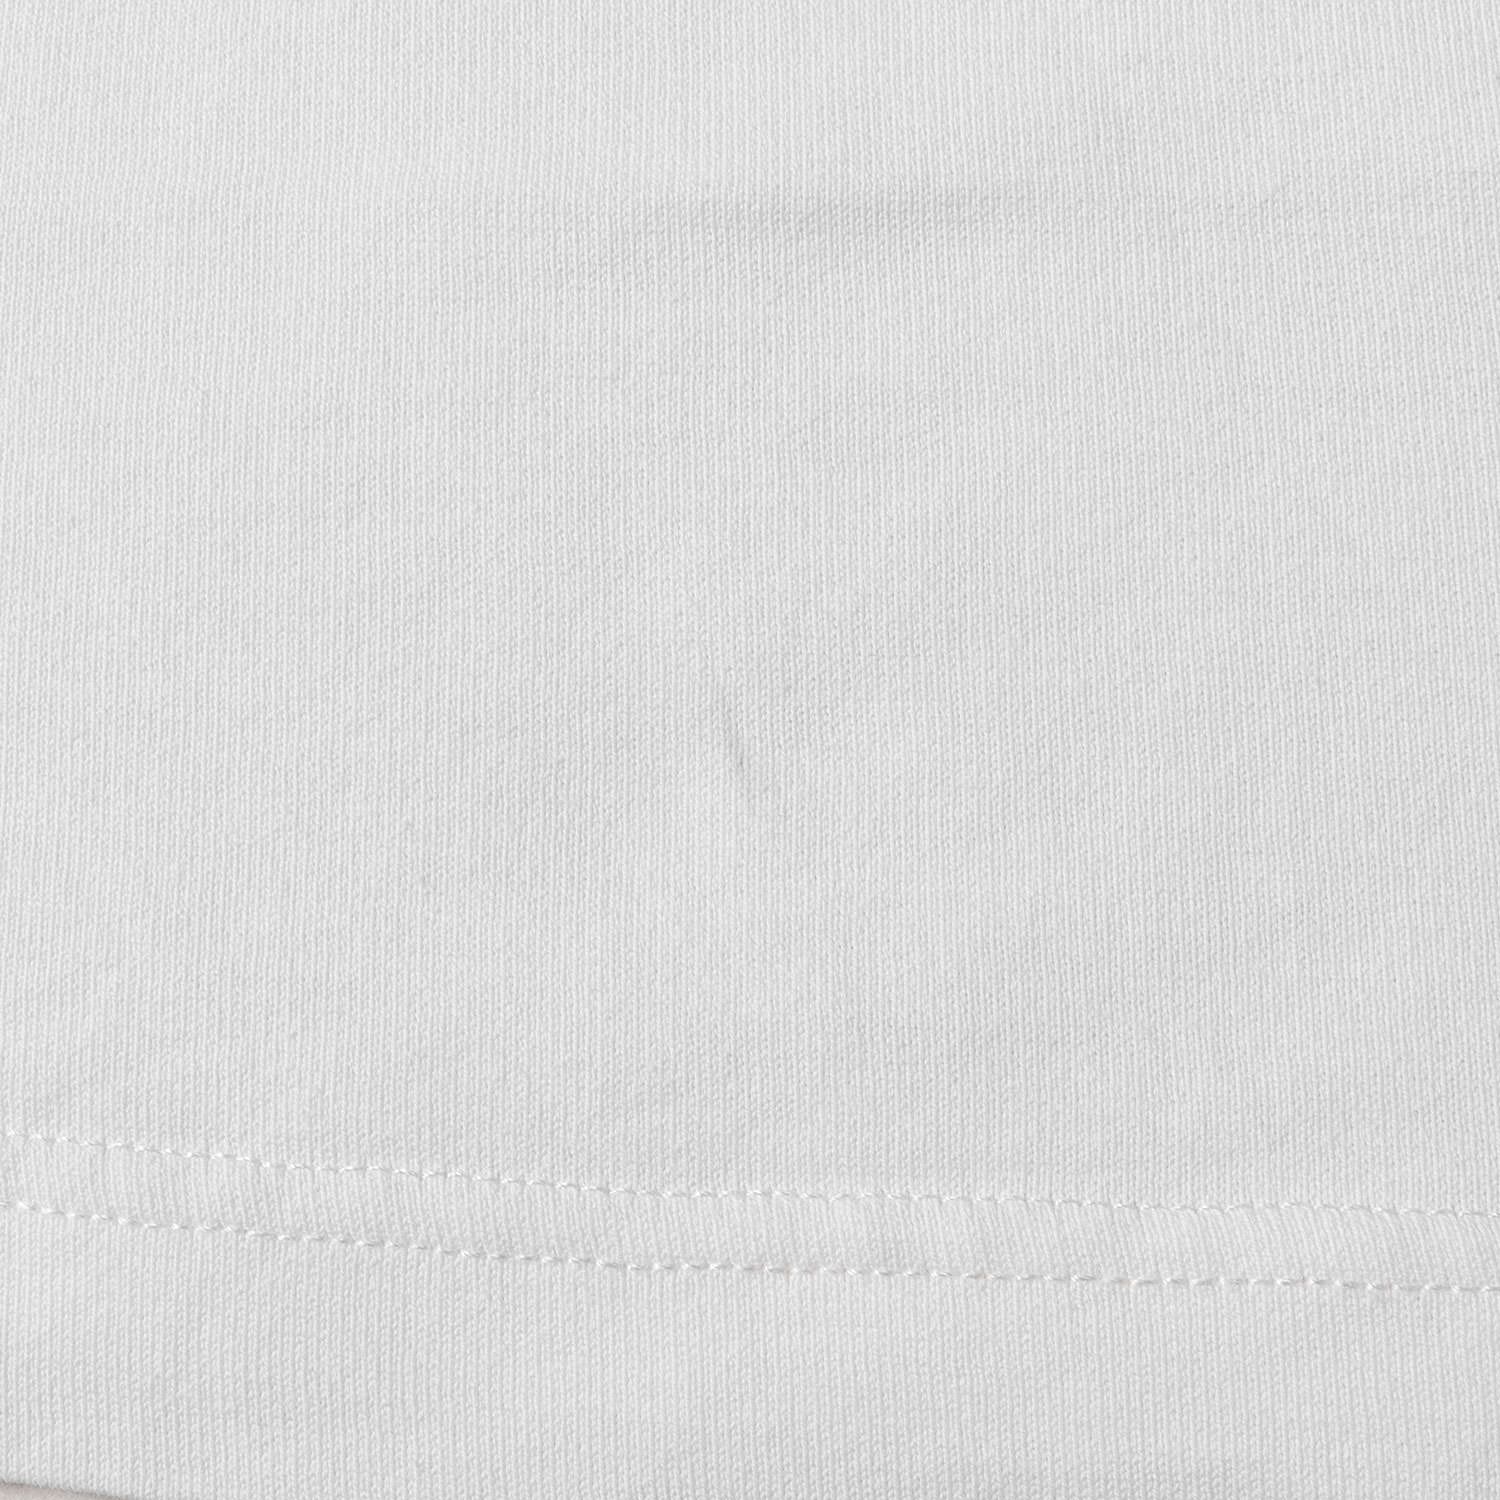 LOUIS VUITTON ルイヴィトン Tシャツ サイズ:L マルチカラーモノグラム RM202M NPG HJY01W クルーネック 半袖  ヴァージル・アブロー 20AW ホワイト 白 トップス カットソー ブランド イタリア製